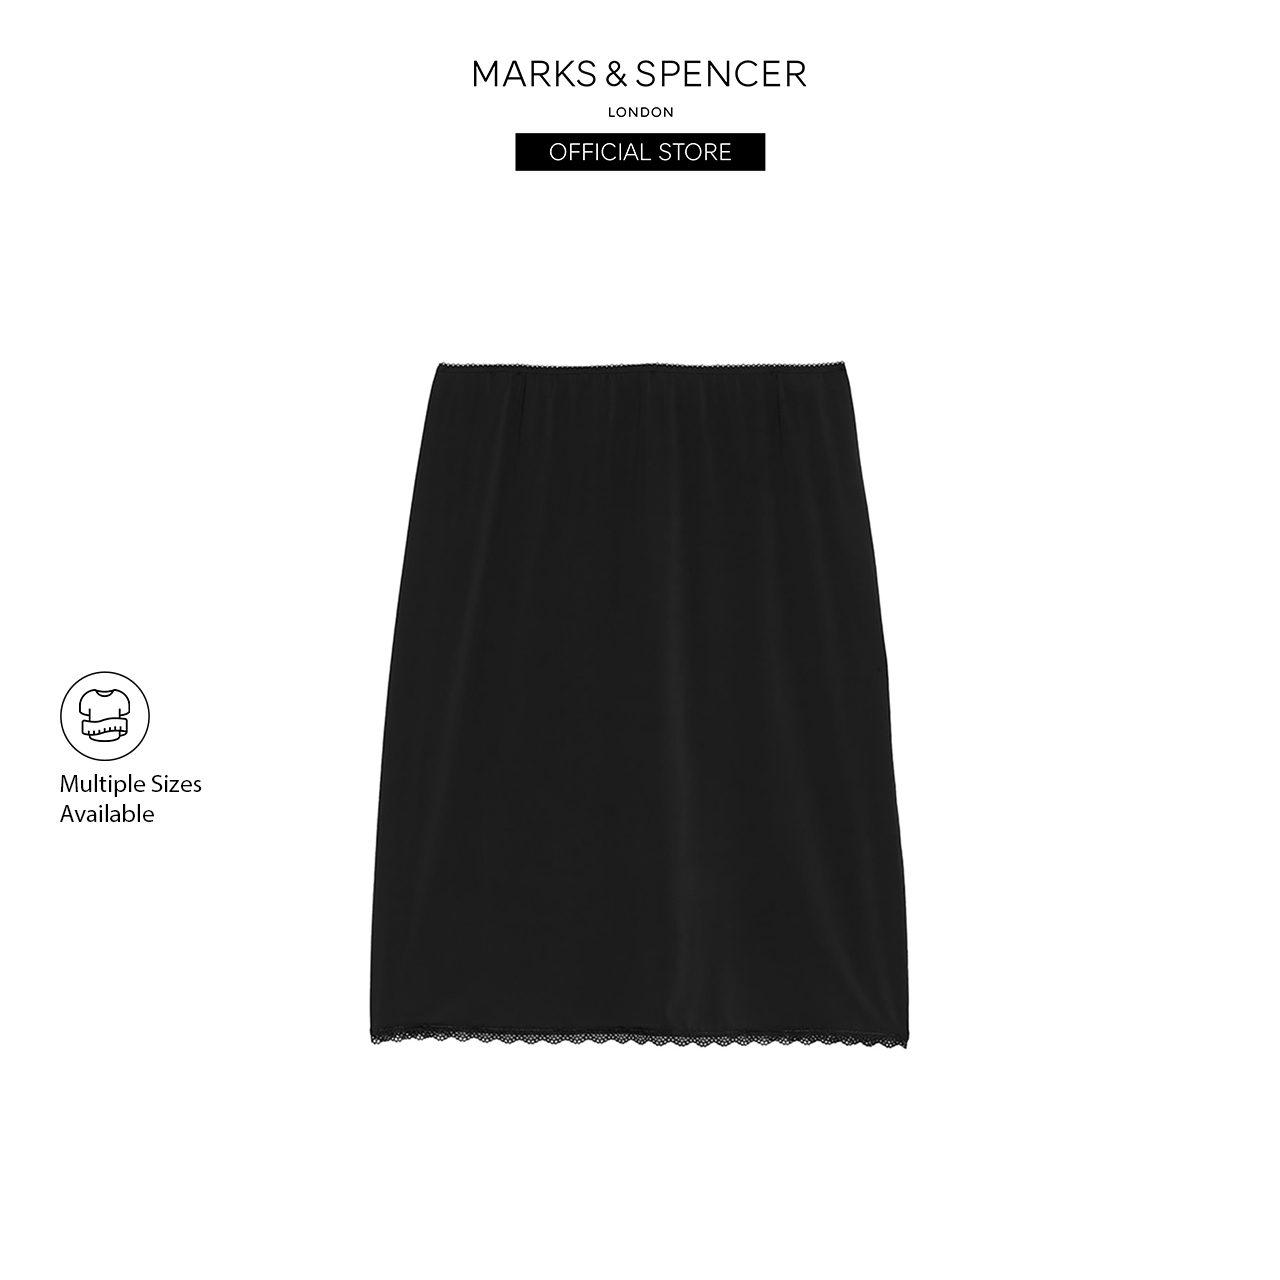 Buy Marks & Spencer Camisoles & Slips Online